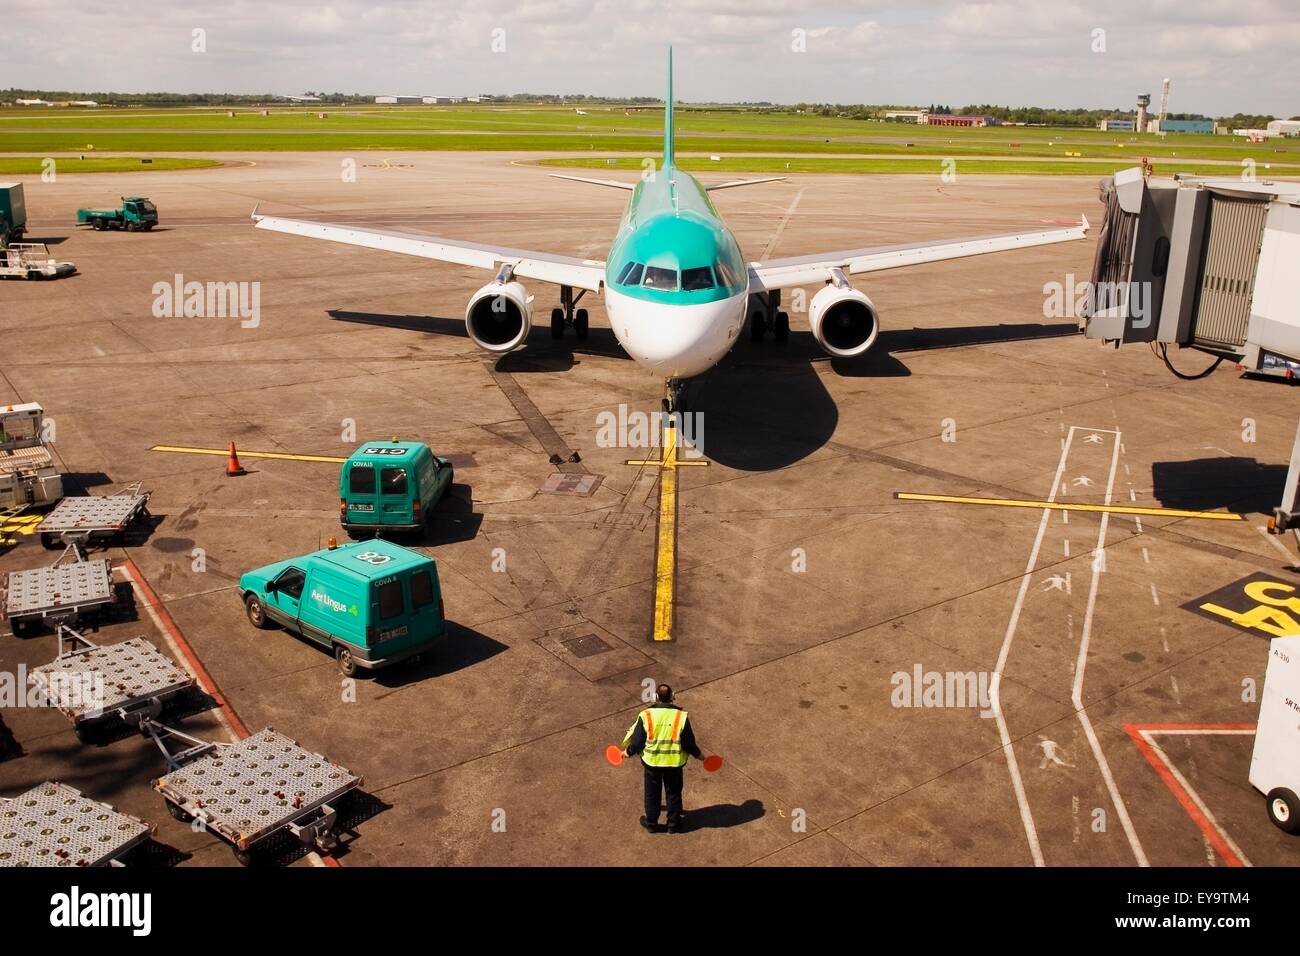 Les avions d'Aer Lingus, l'aéroport de Dublin, Dublin, Irlande Banque D'Images